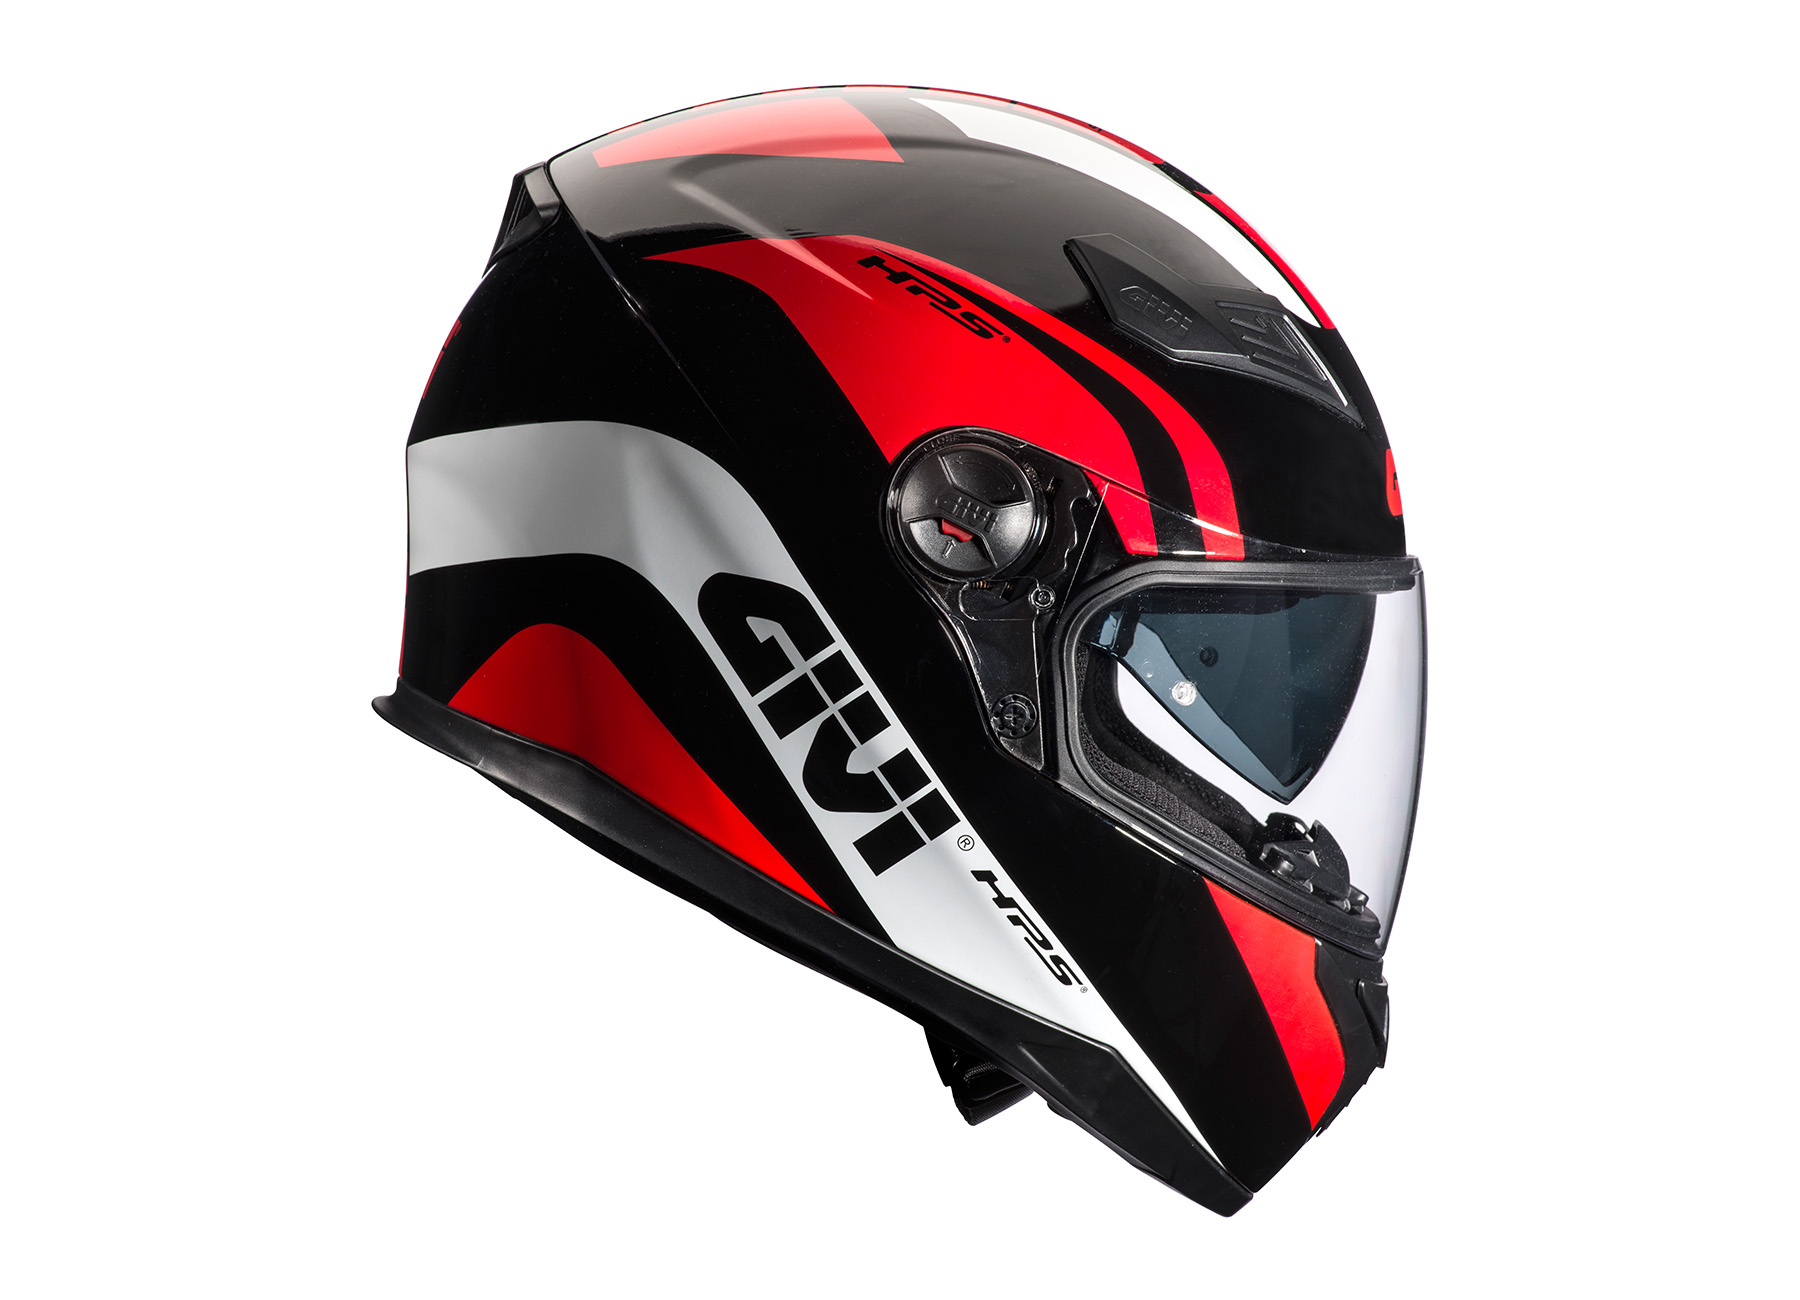 Givi’s new £80 full-face helmet